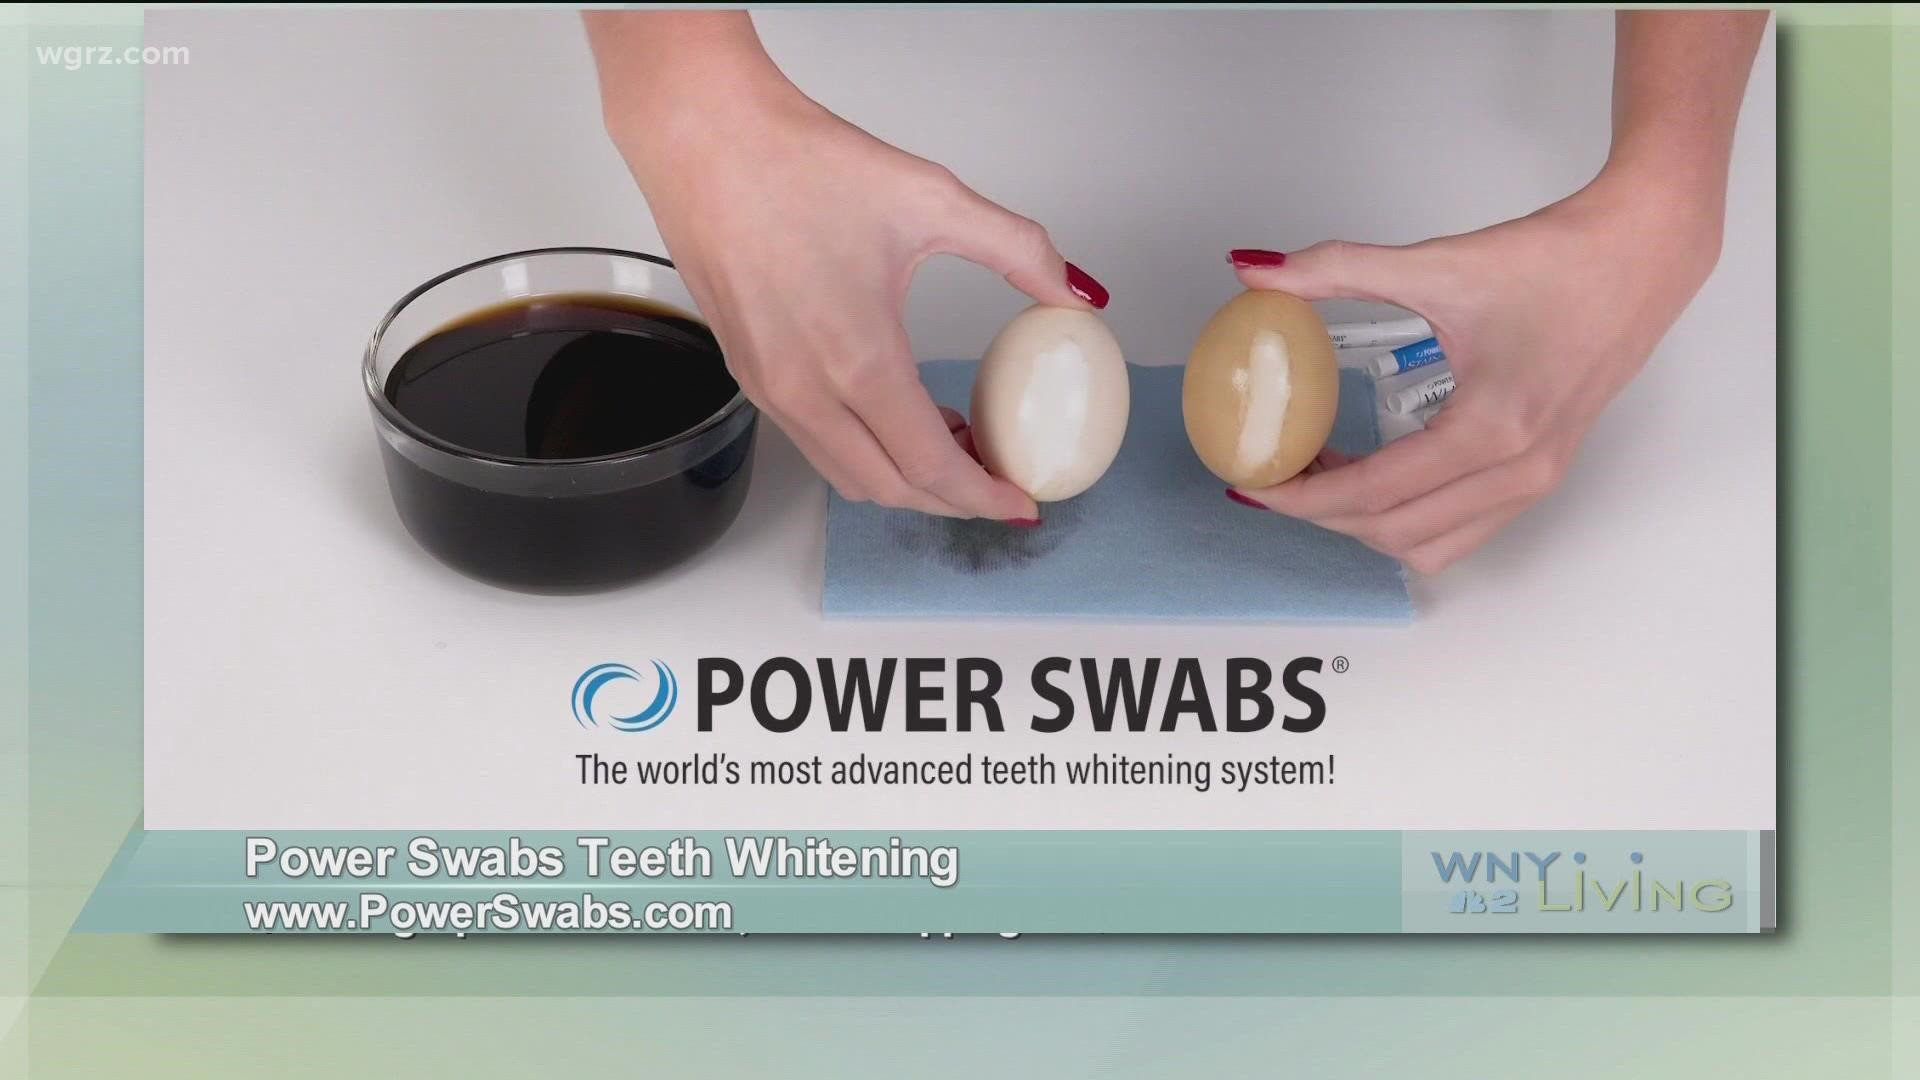 WNY Living - December 18 - Power Swabs Teeth Whitening (THIS VIDEO IS SPONSORED BY POWER SWABS TEETH WHITENING)